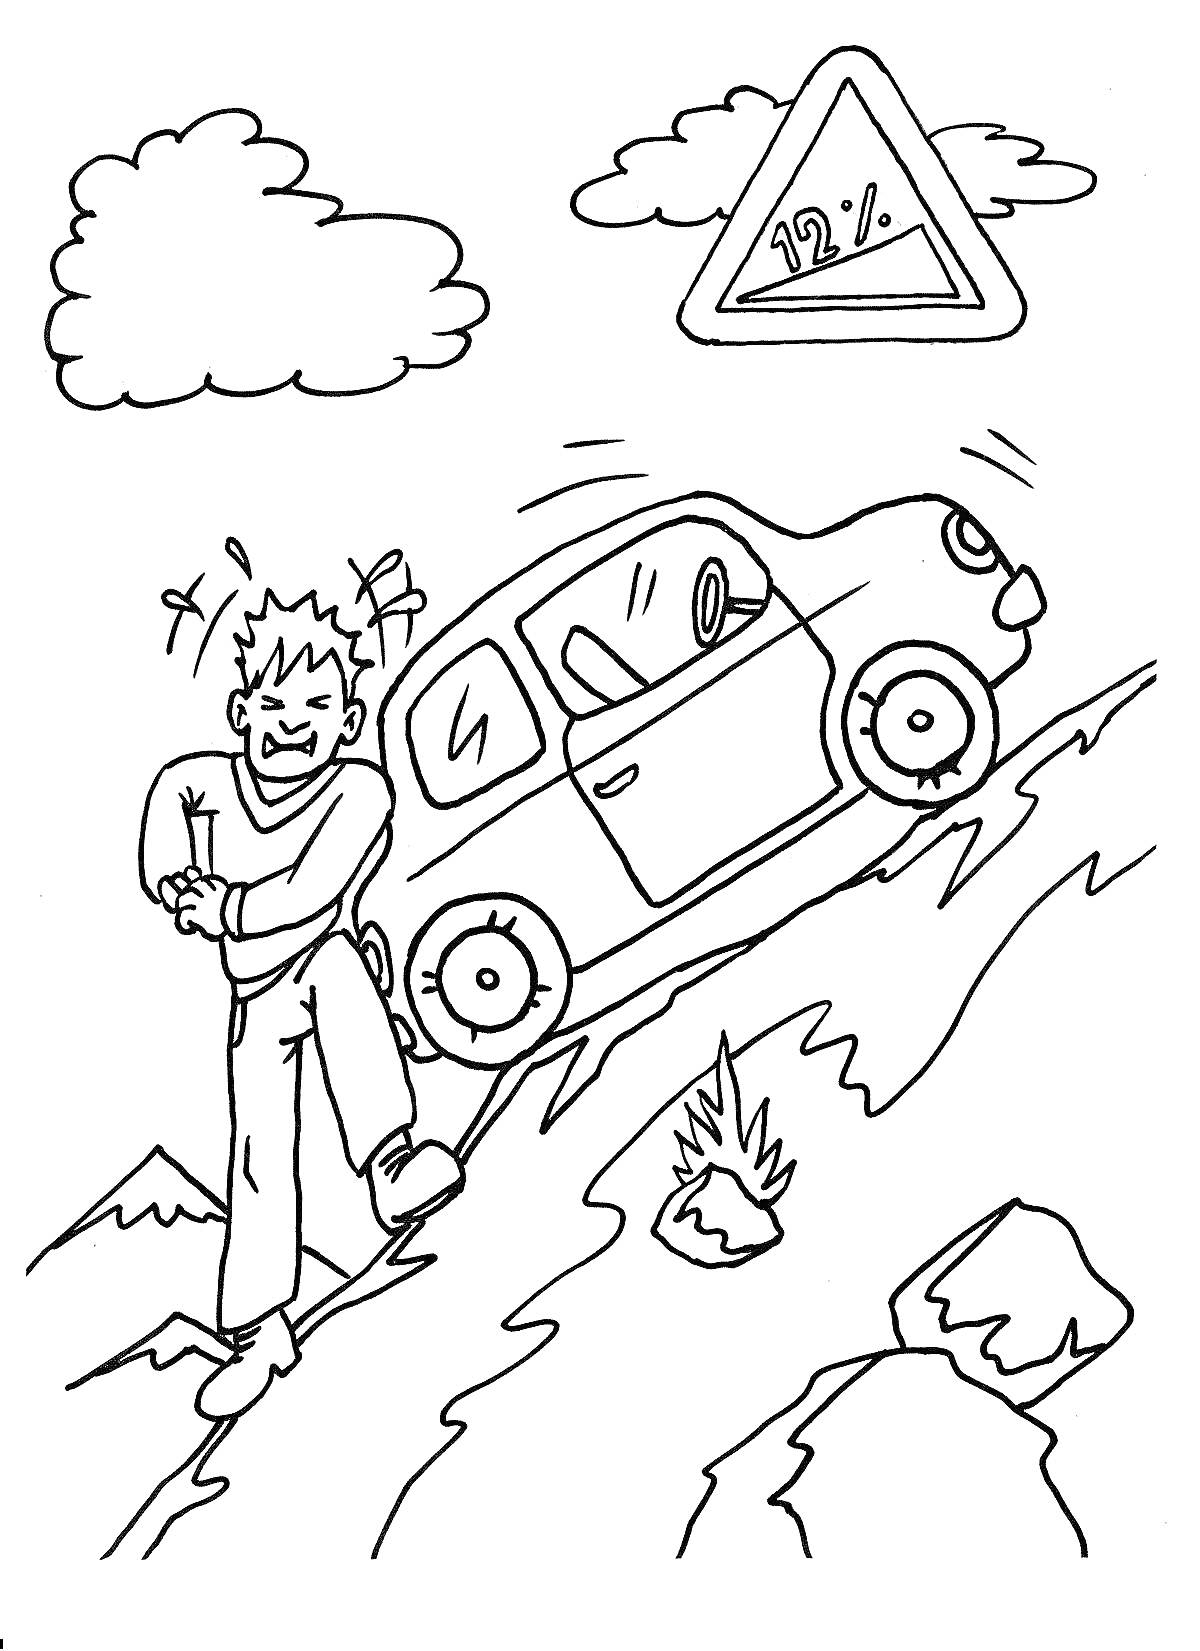 Машина и человек на крутом подъеме, дорожный знак уклона 22%, облака и камни